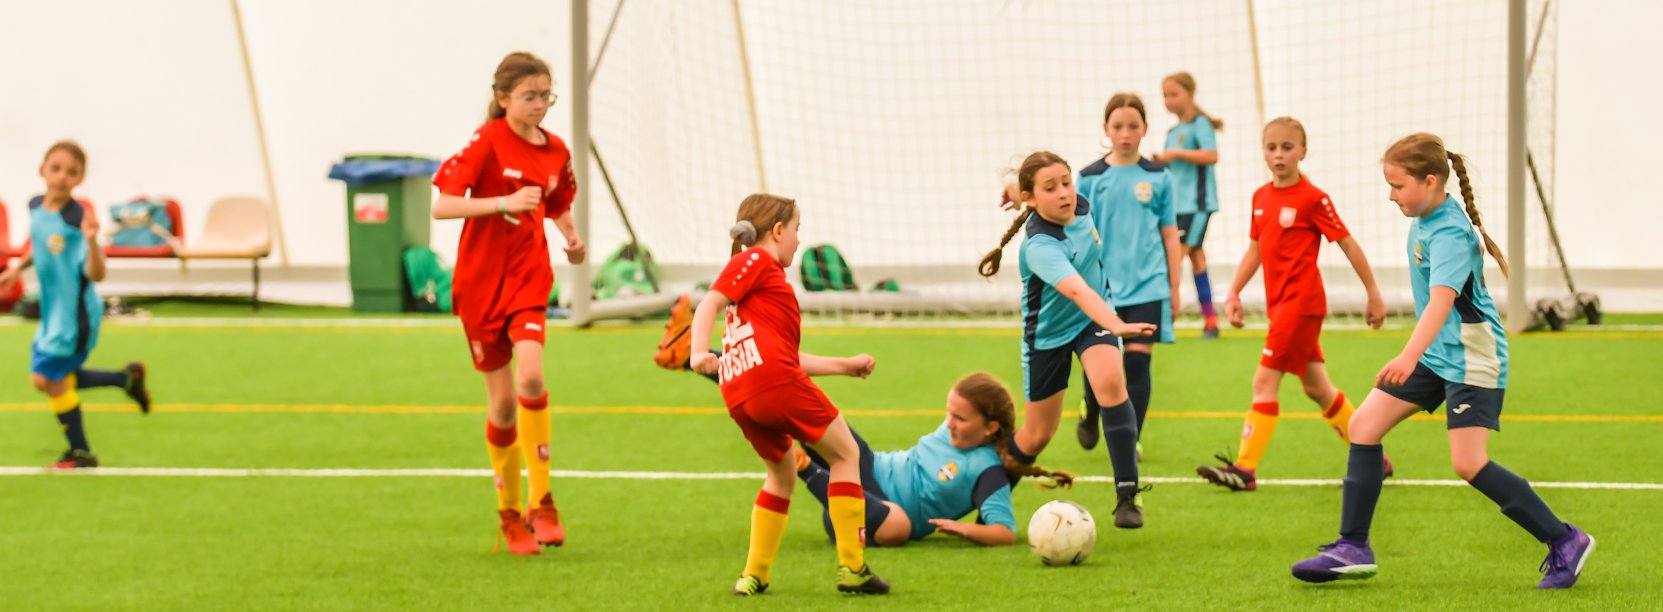 Młode dziewczyny w sportowych strojach grają w piłkę, w tle bramka